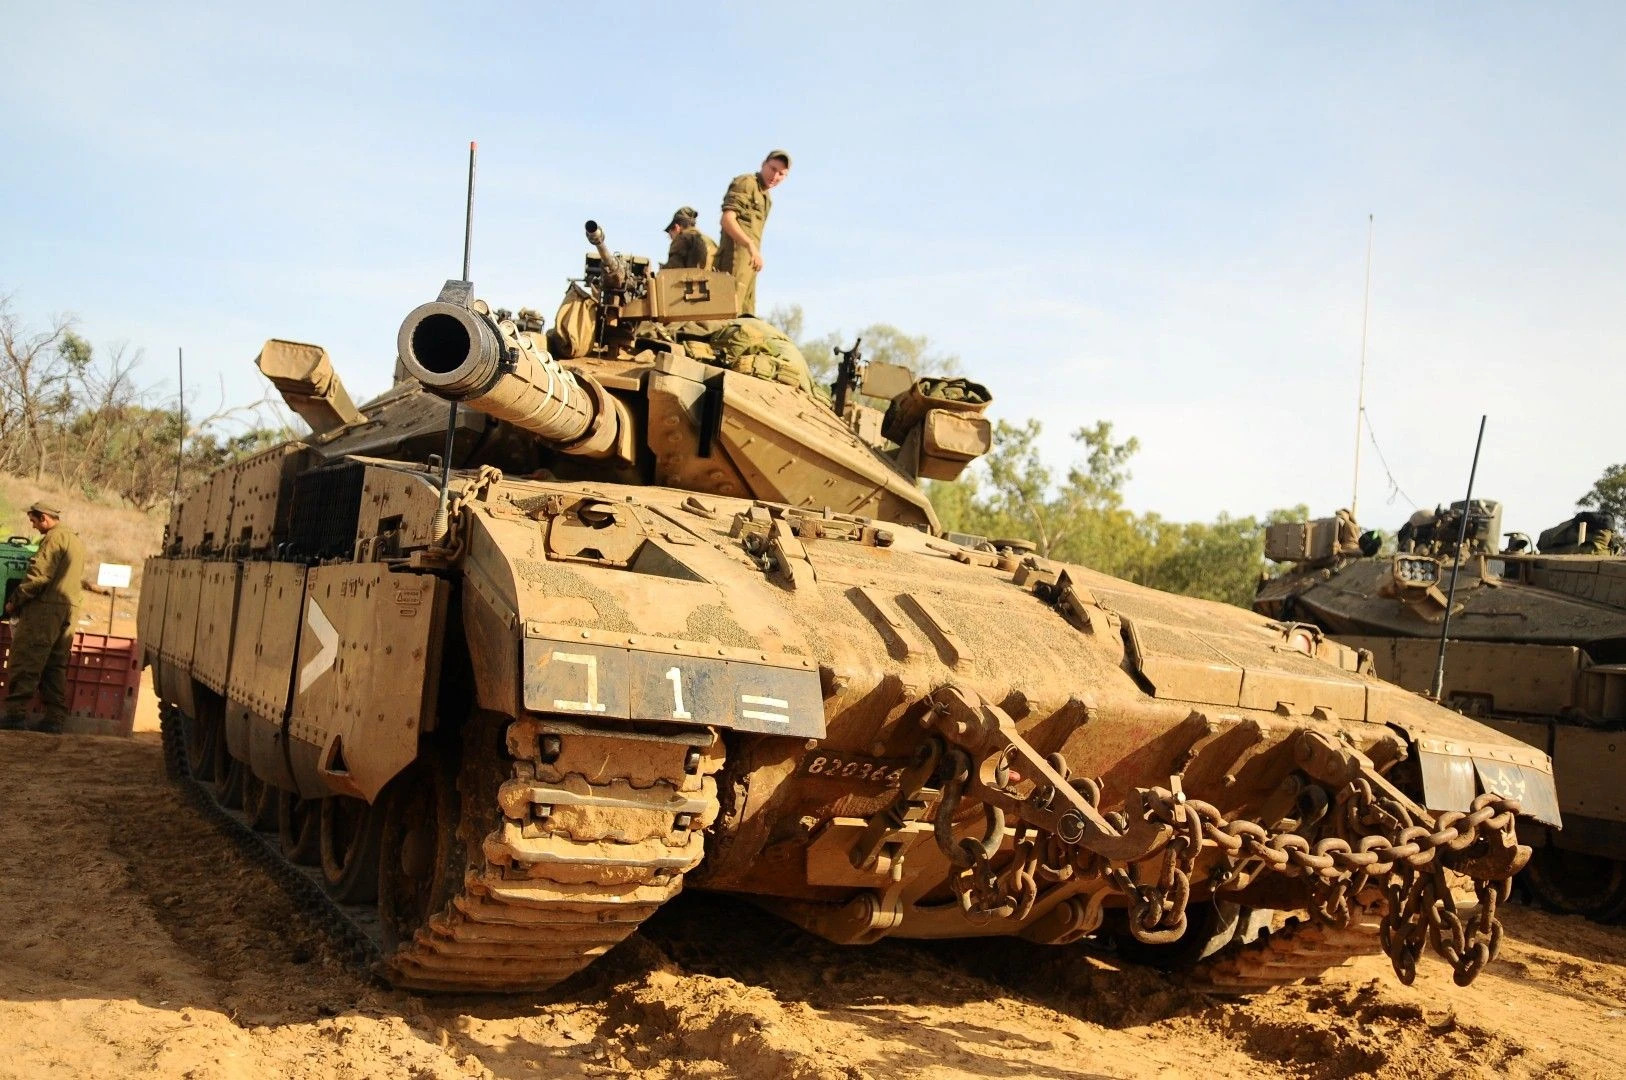 ВСУ могут получить израильские танки Merkava, - СМИ